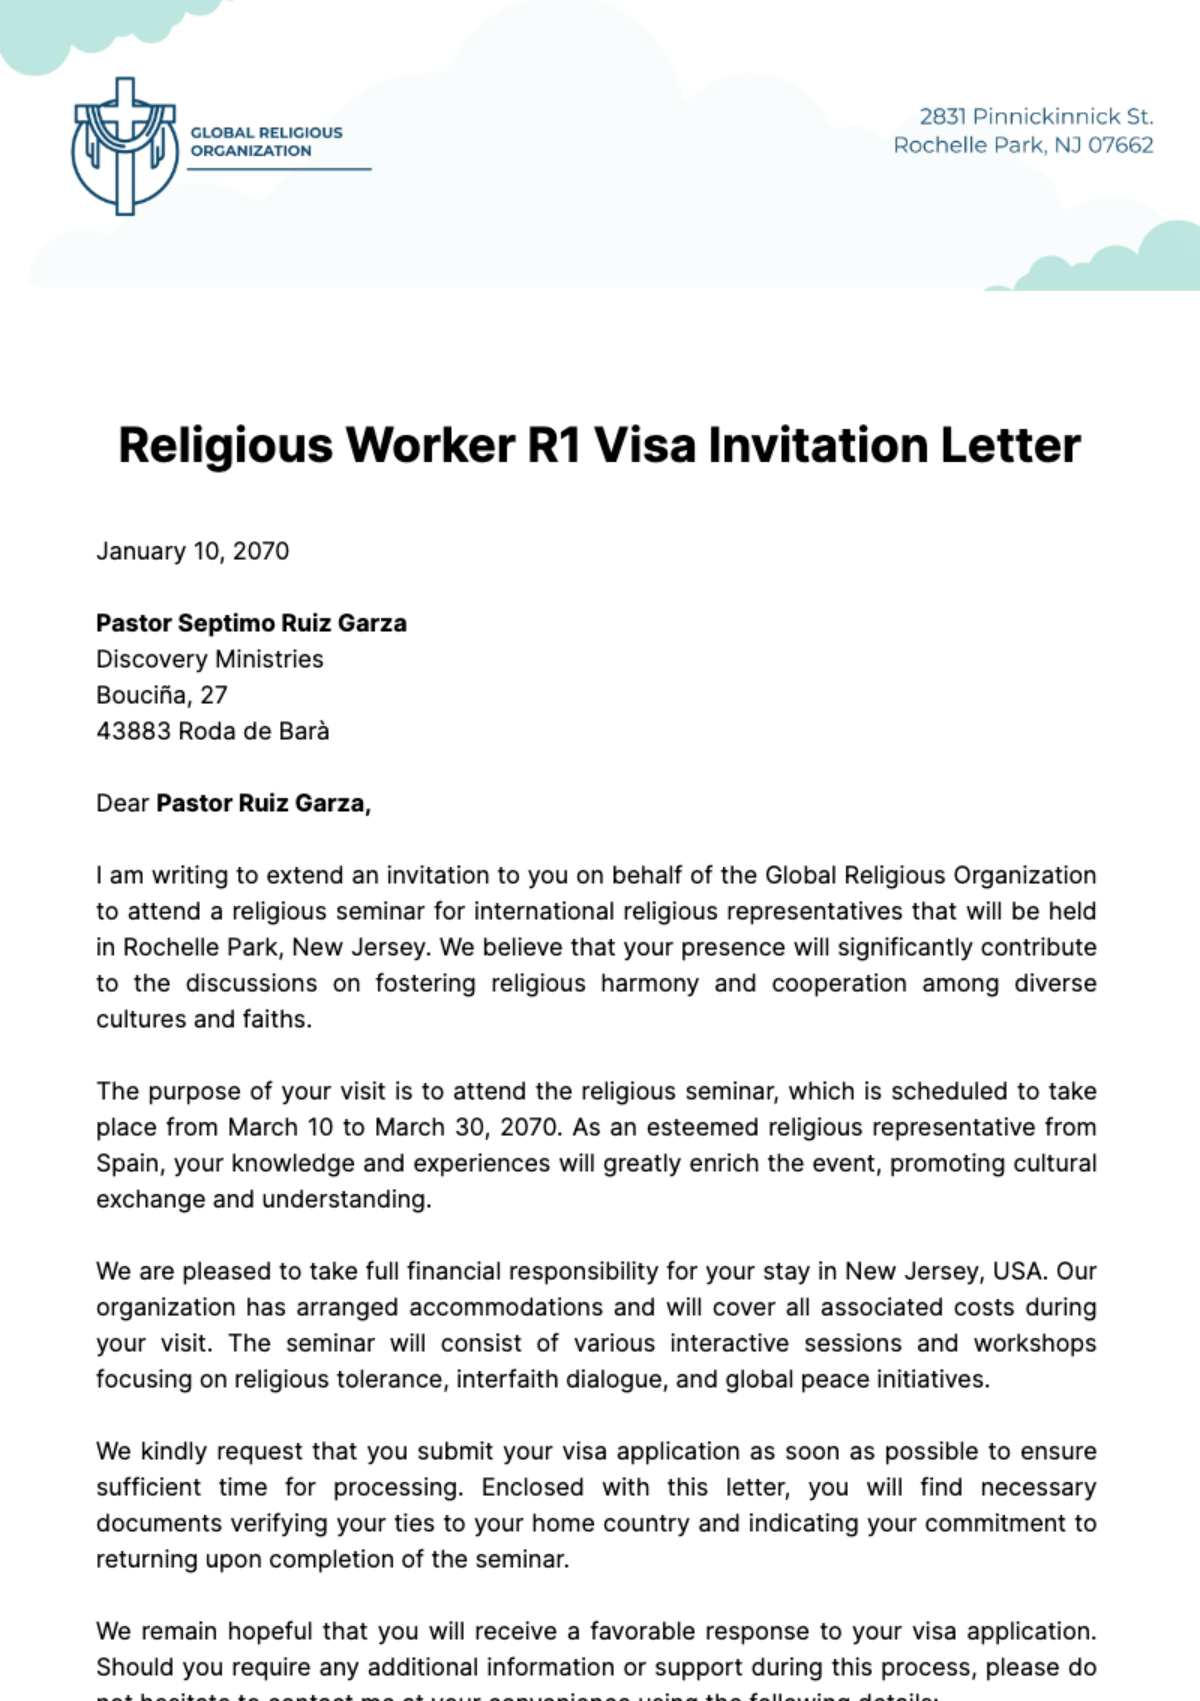 Religious Worker R1 Visa Invitation Letter Template